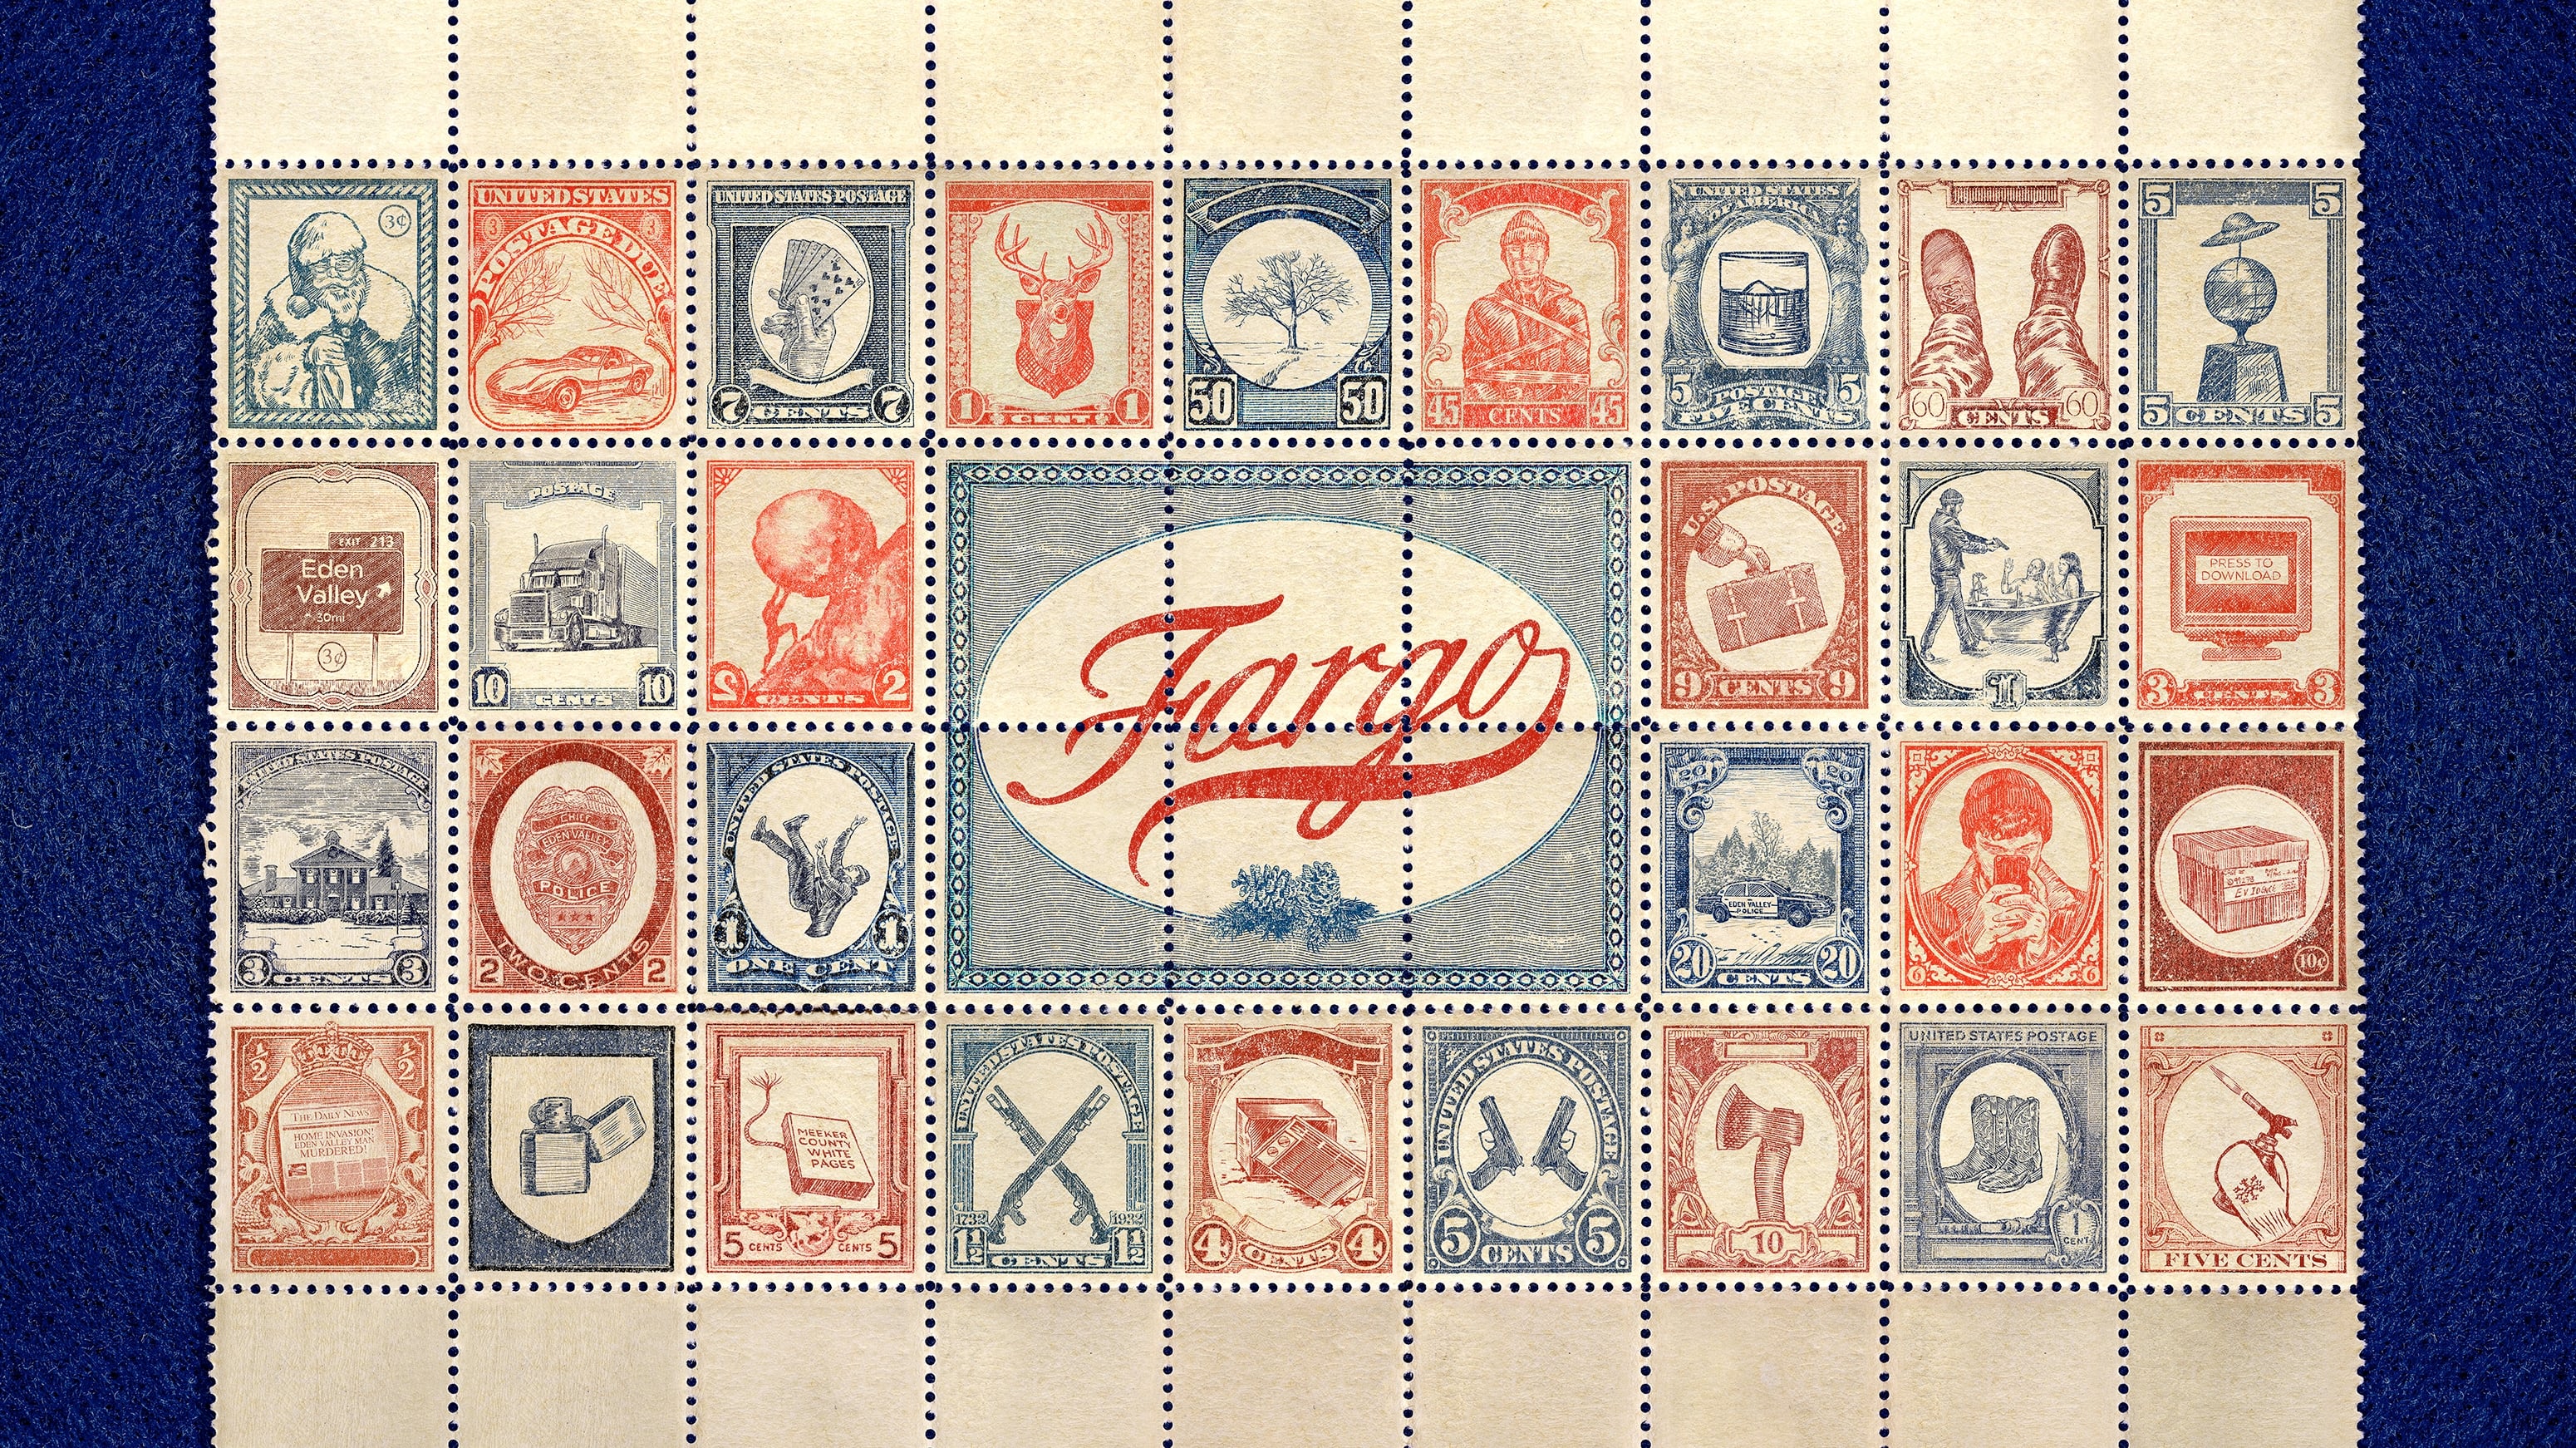 Fargo - Season 4 Episode 5